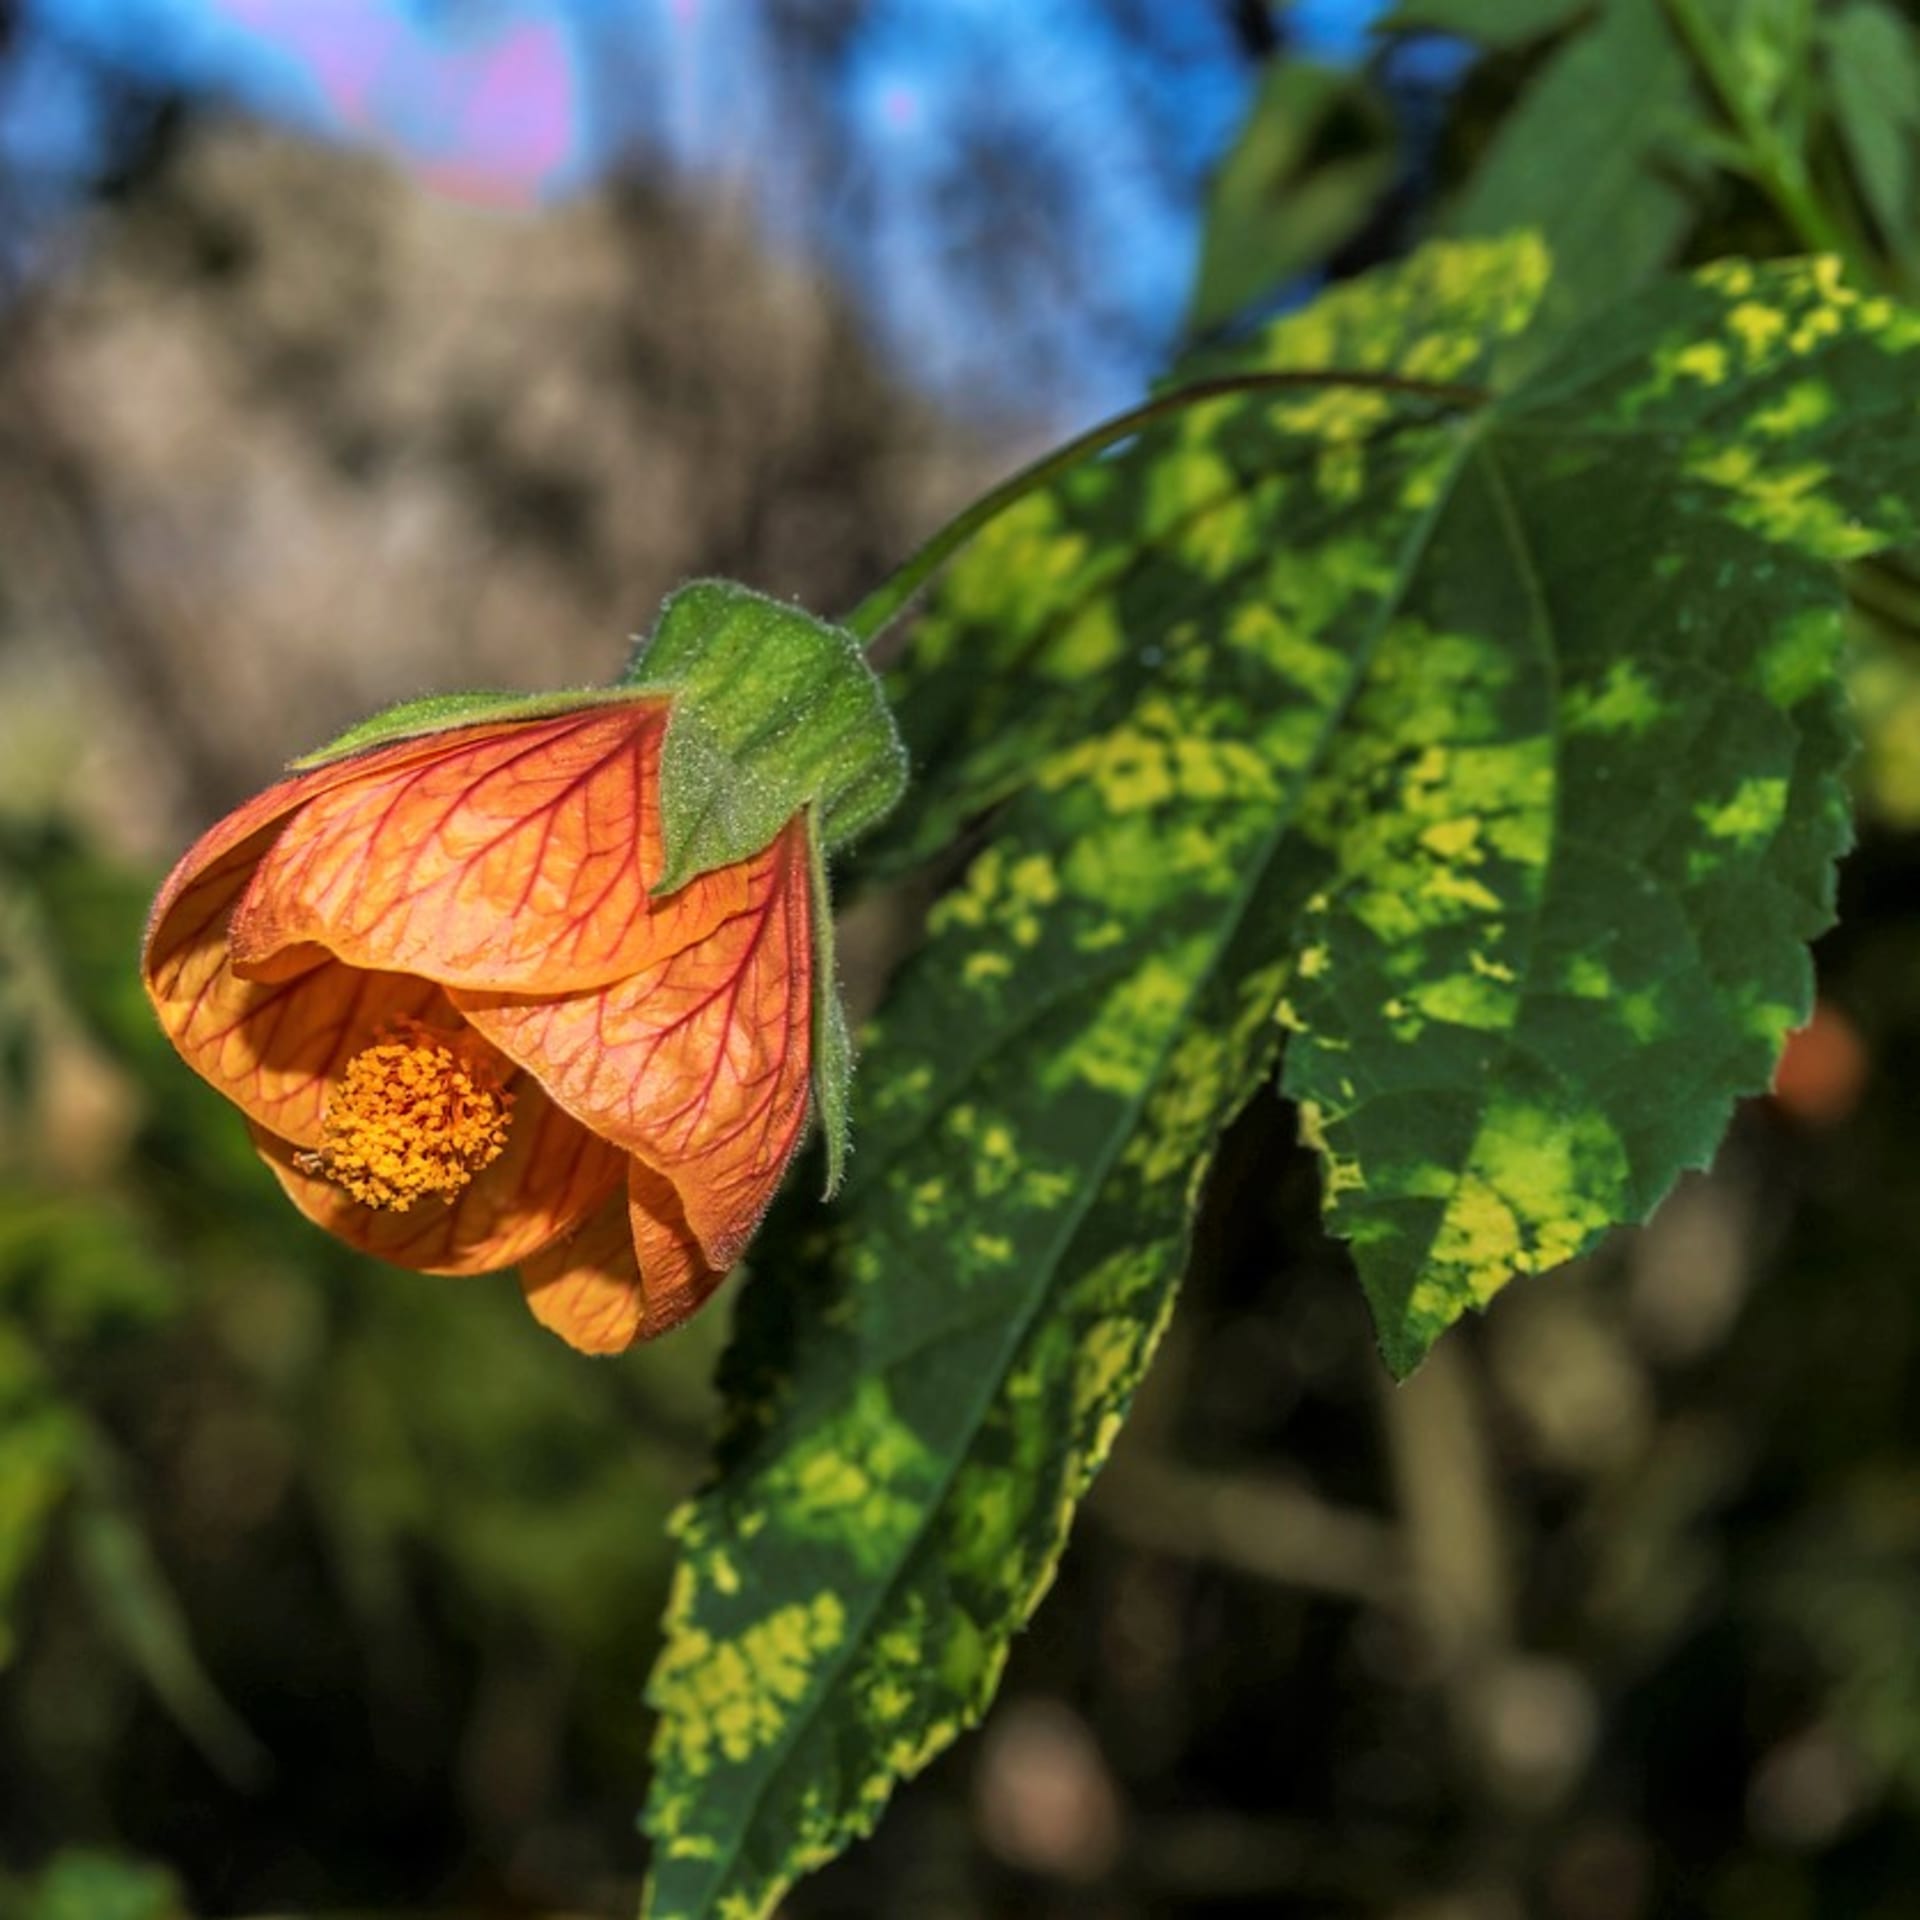 Oblíbený je zejména kultivar Abutilon pictum ‚Thompsonii‘ s pestrou žlutozelenou mozaikou na listech. Na žlutooranžových květech je nápadná tmavší žilnatina.